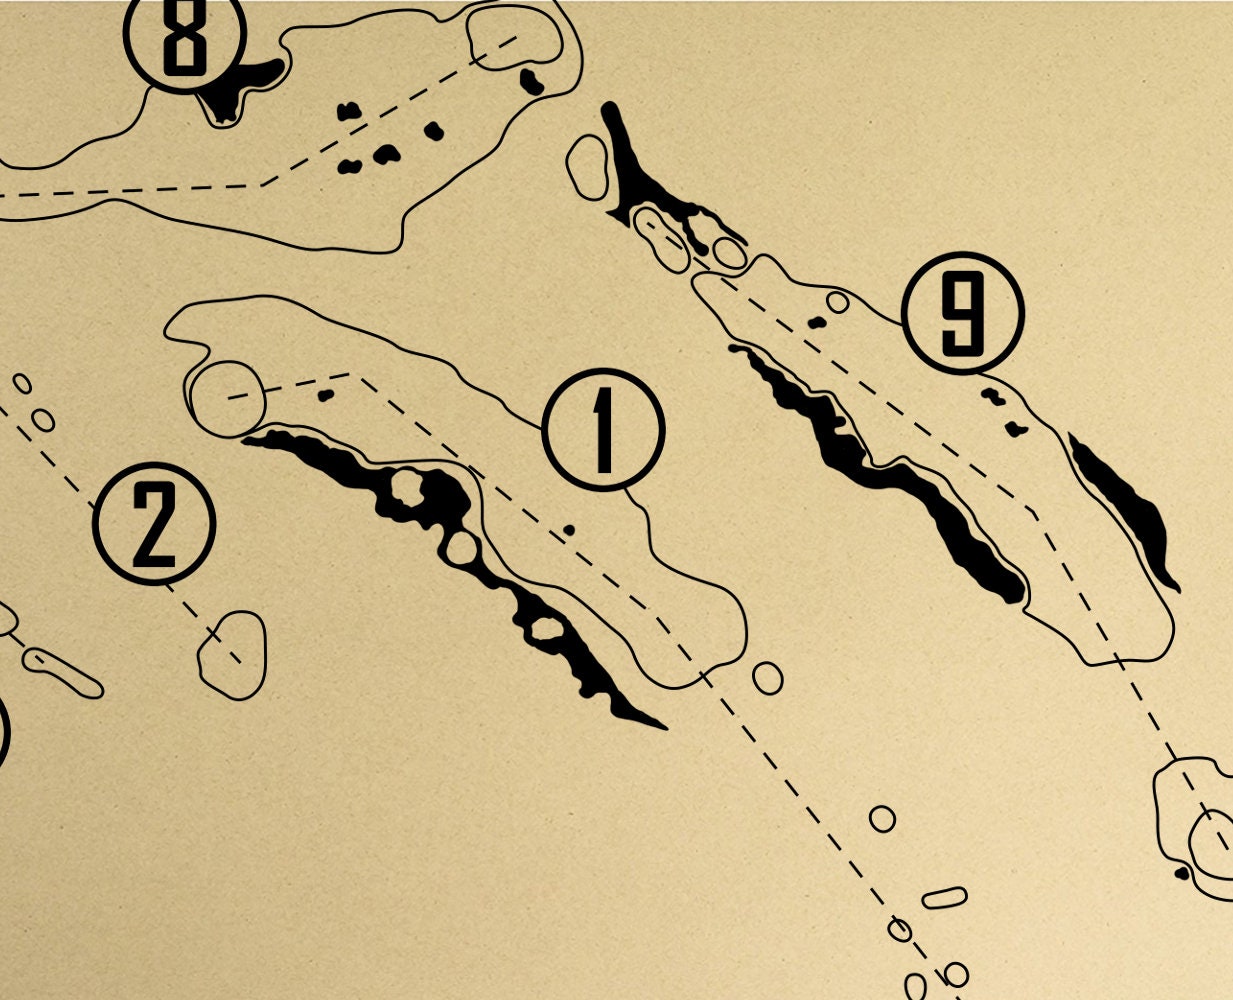 Diamante Cabo San Lucas Dunes Course Outline (Print)